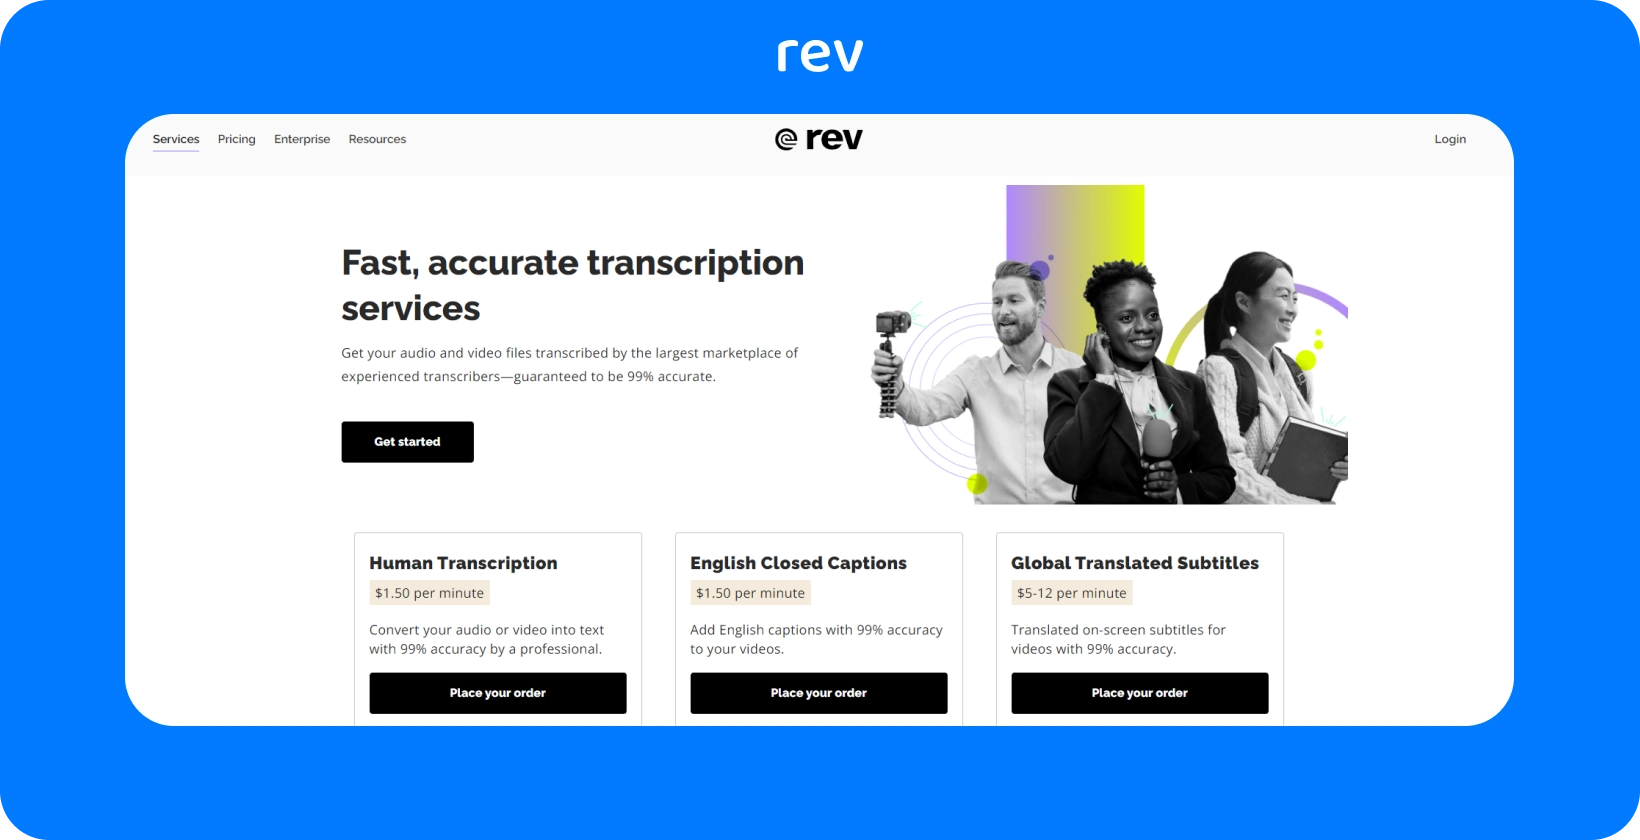 A página inicial do Rev destaca serviços de transcrição rápidos e precisos por profissionais, com uma garantia de precisão de 99%.